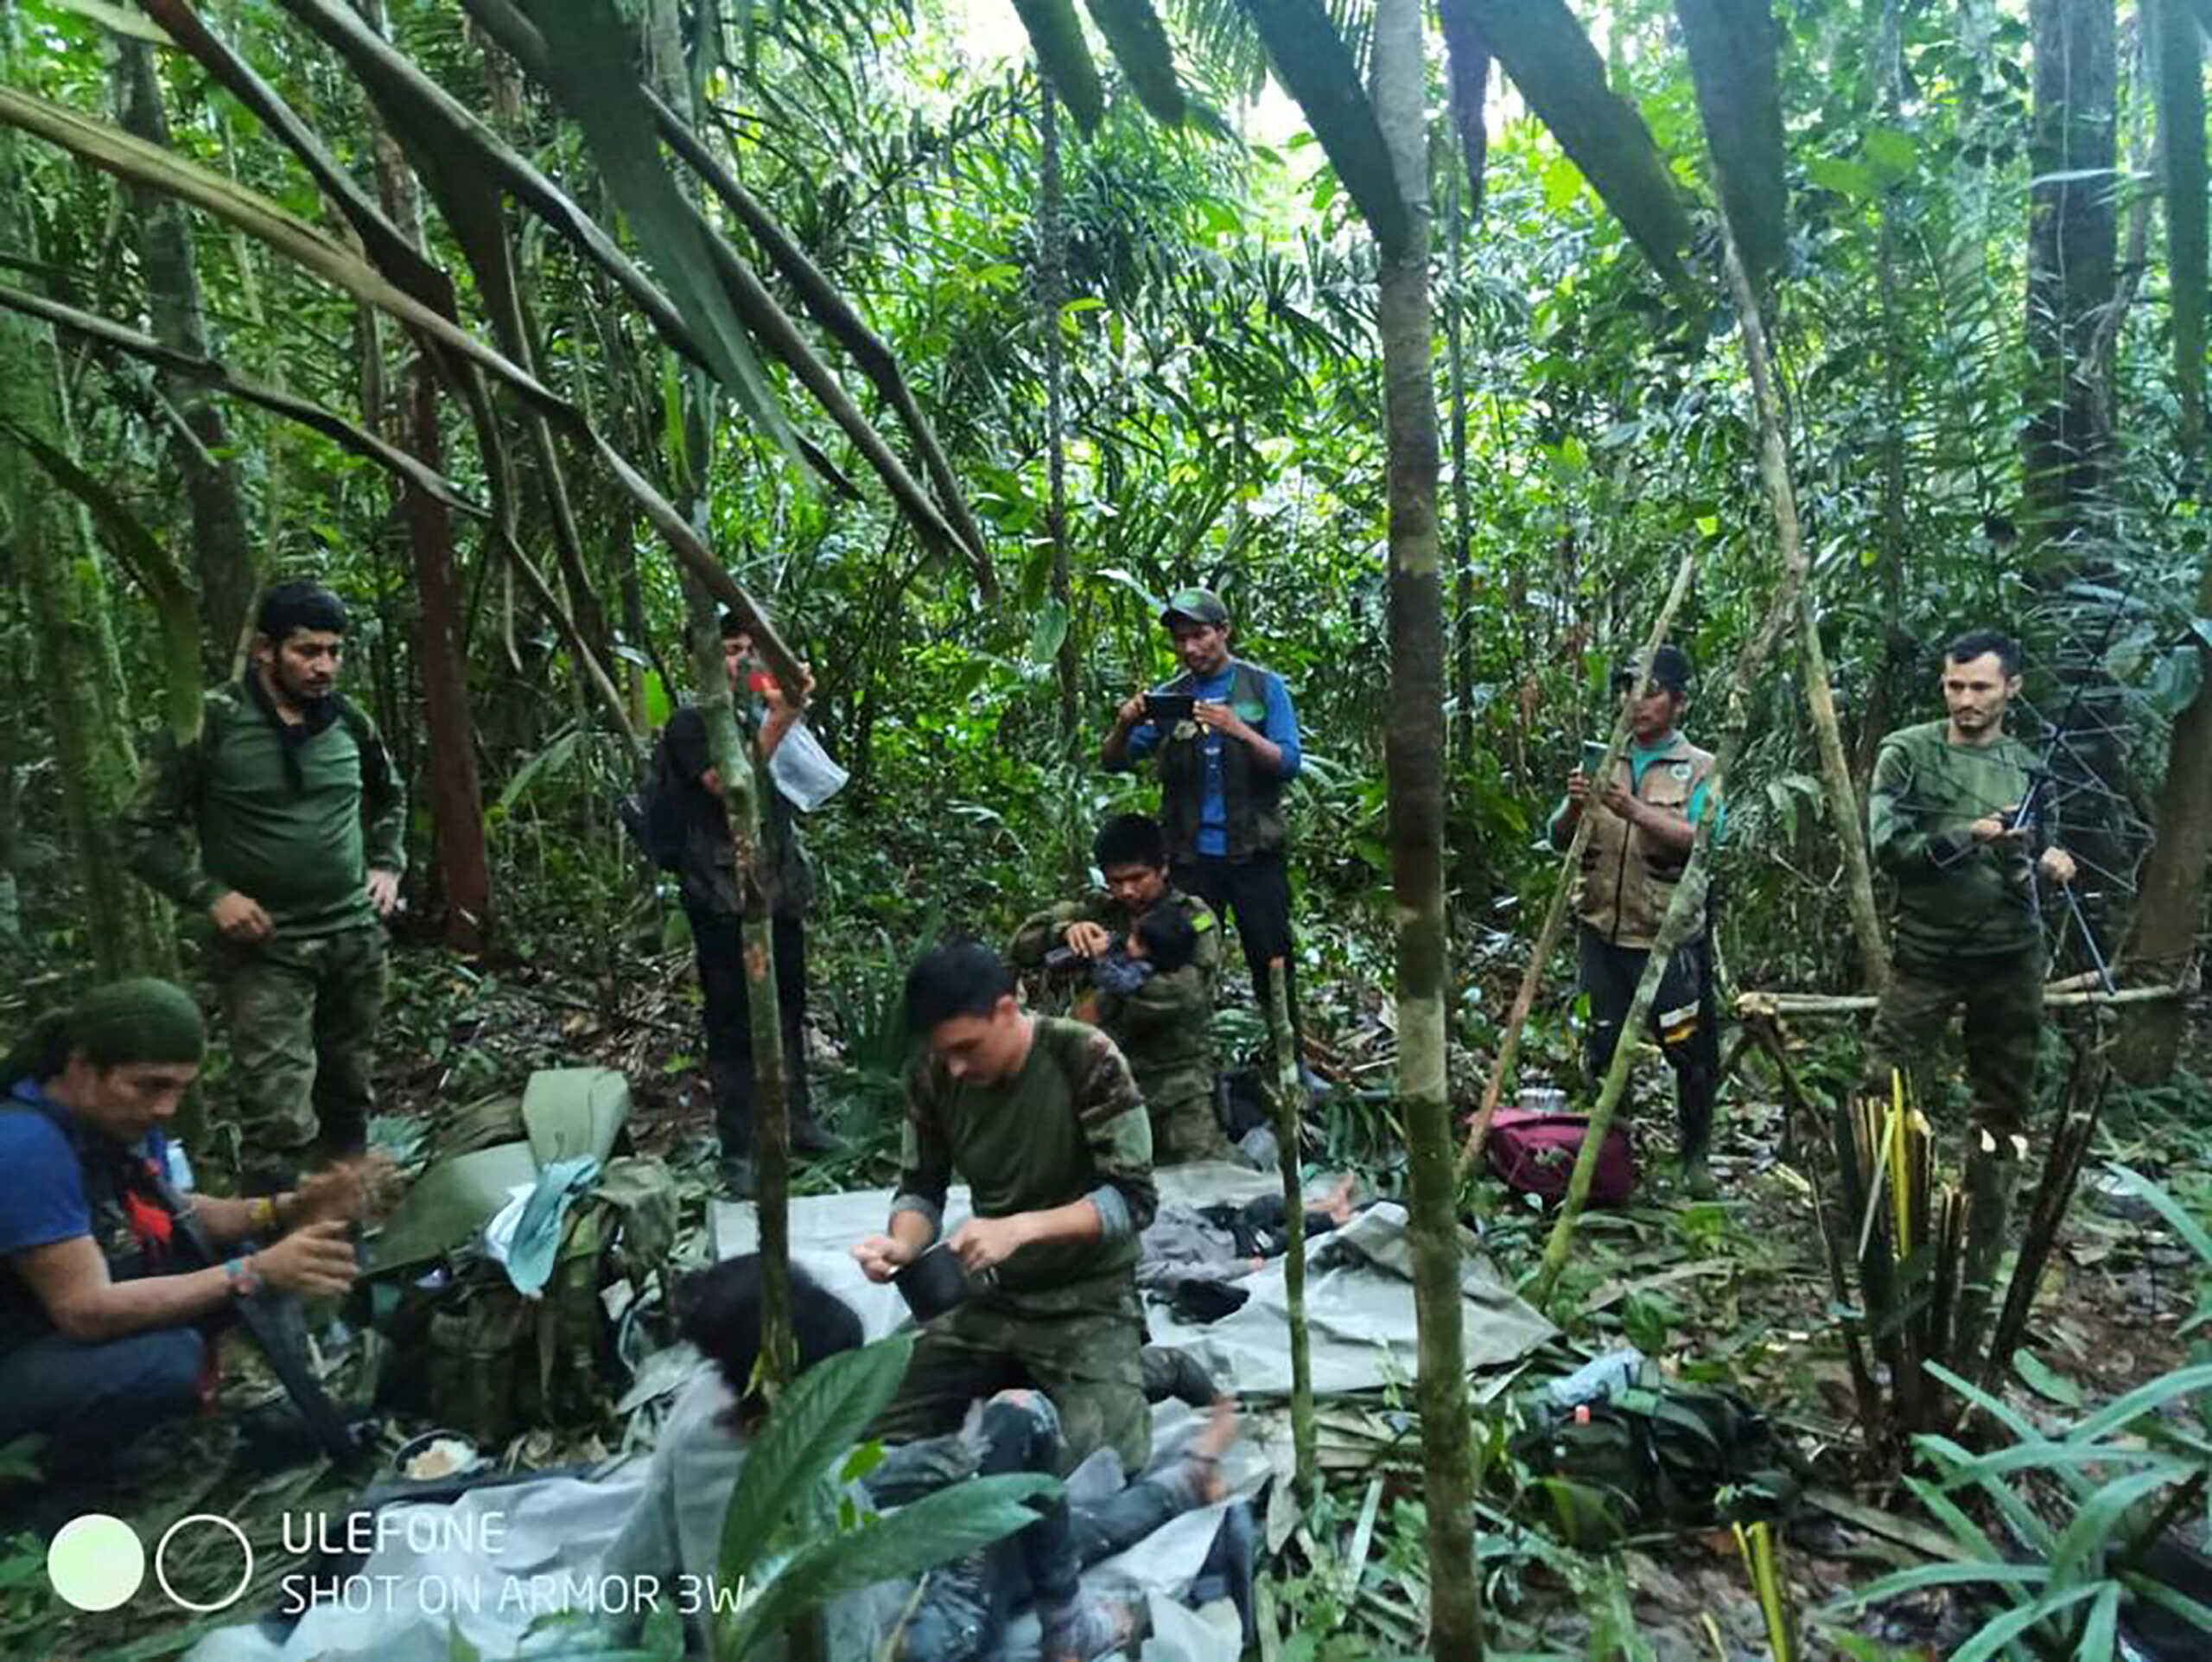 Βρέθηκαν 4 παιδιά ζωντανά στην Κολομβία - Περιπλανώμενη ζούγκλα για 40 ημέρες